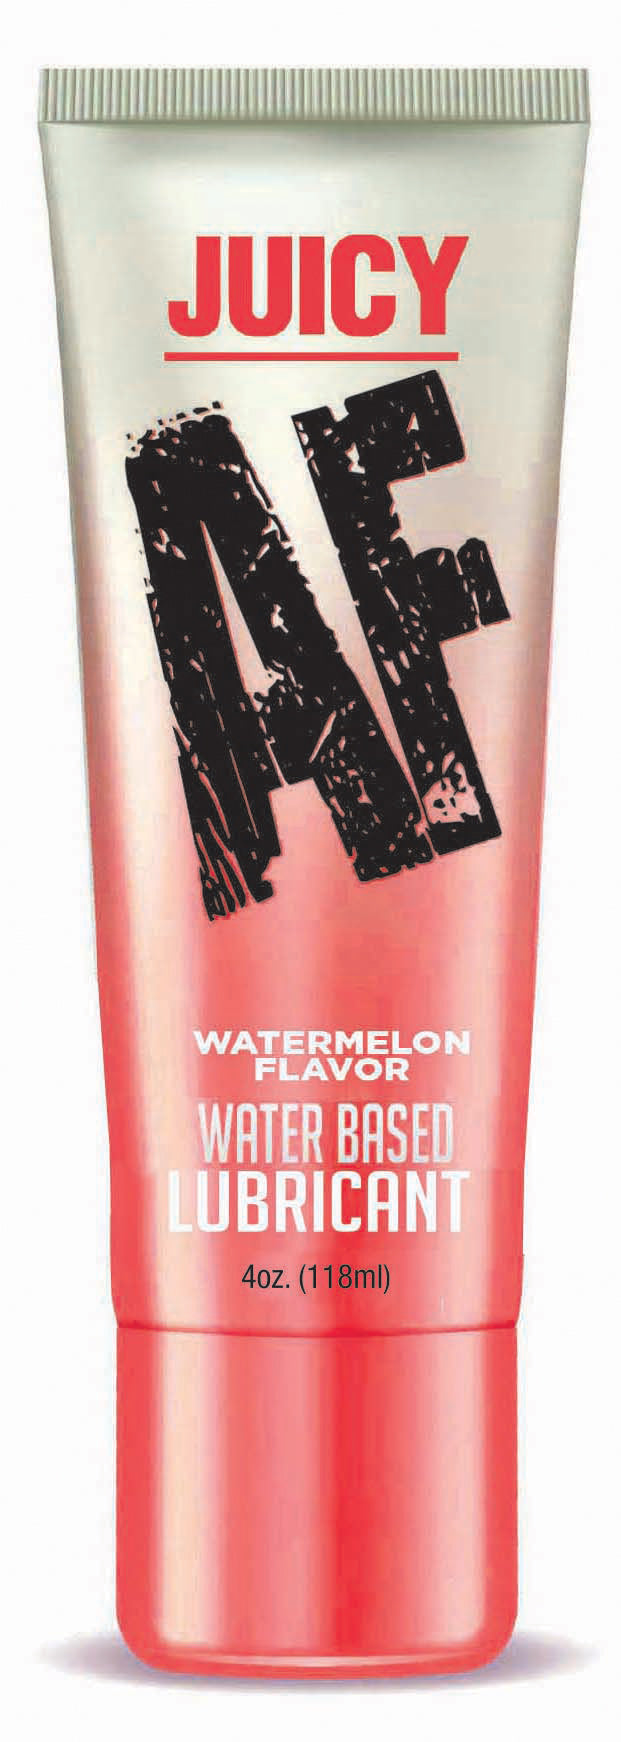 Juicy Af - Watermelon Water Based Flavored Lubricant